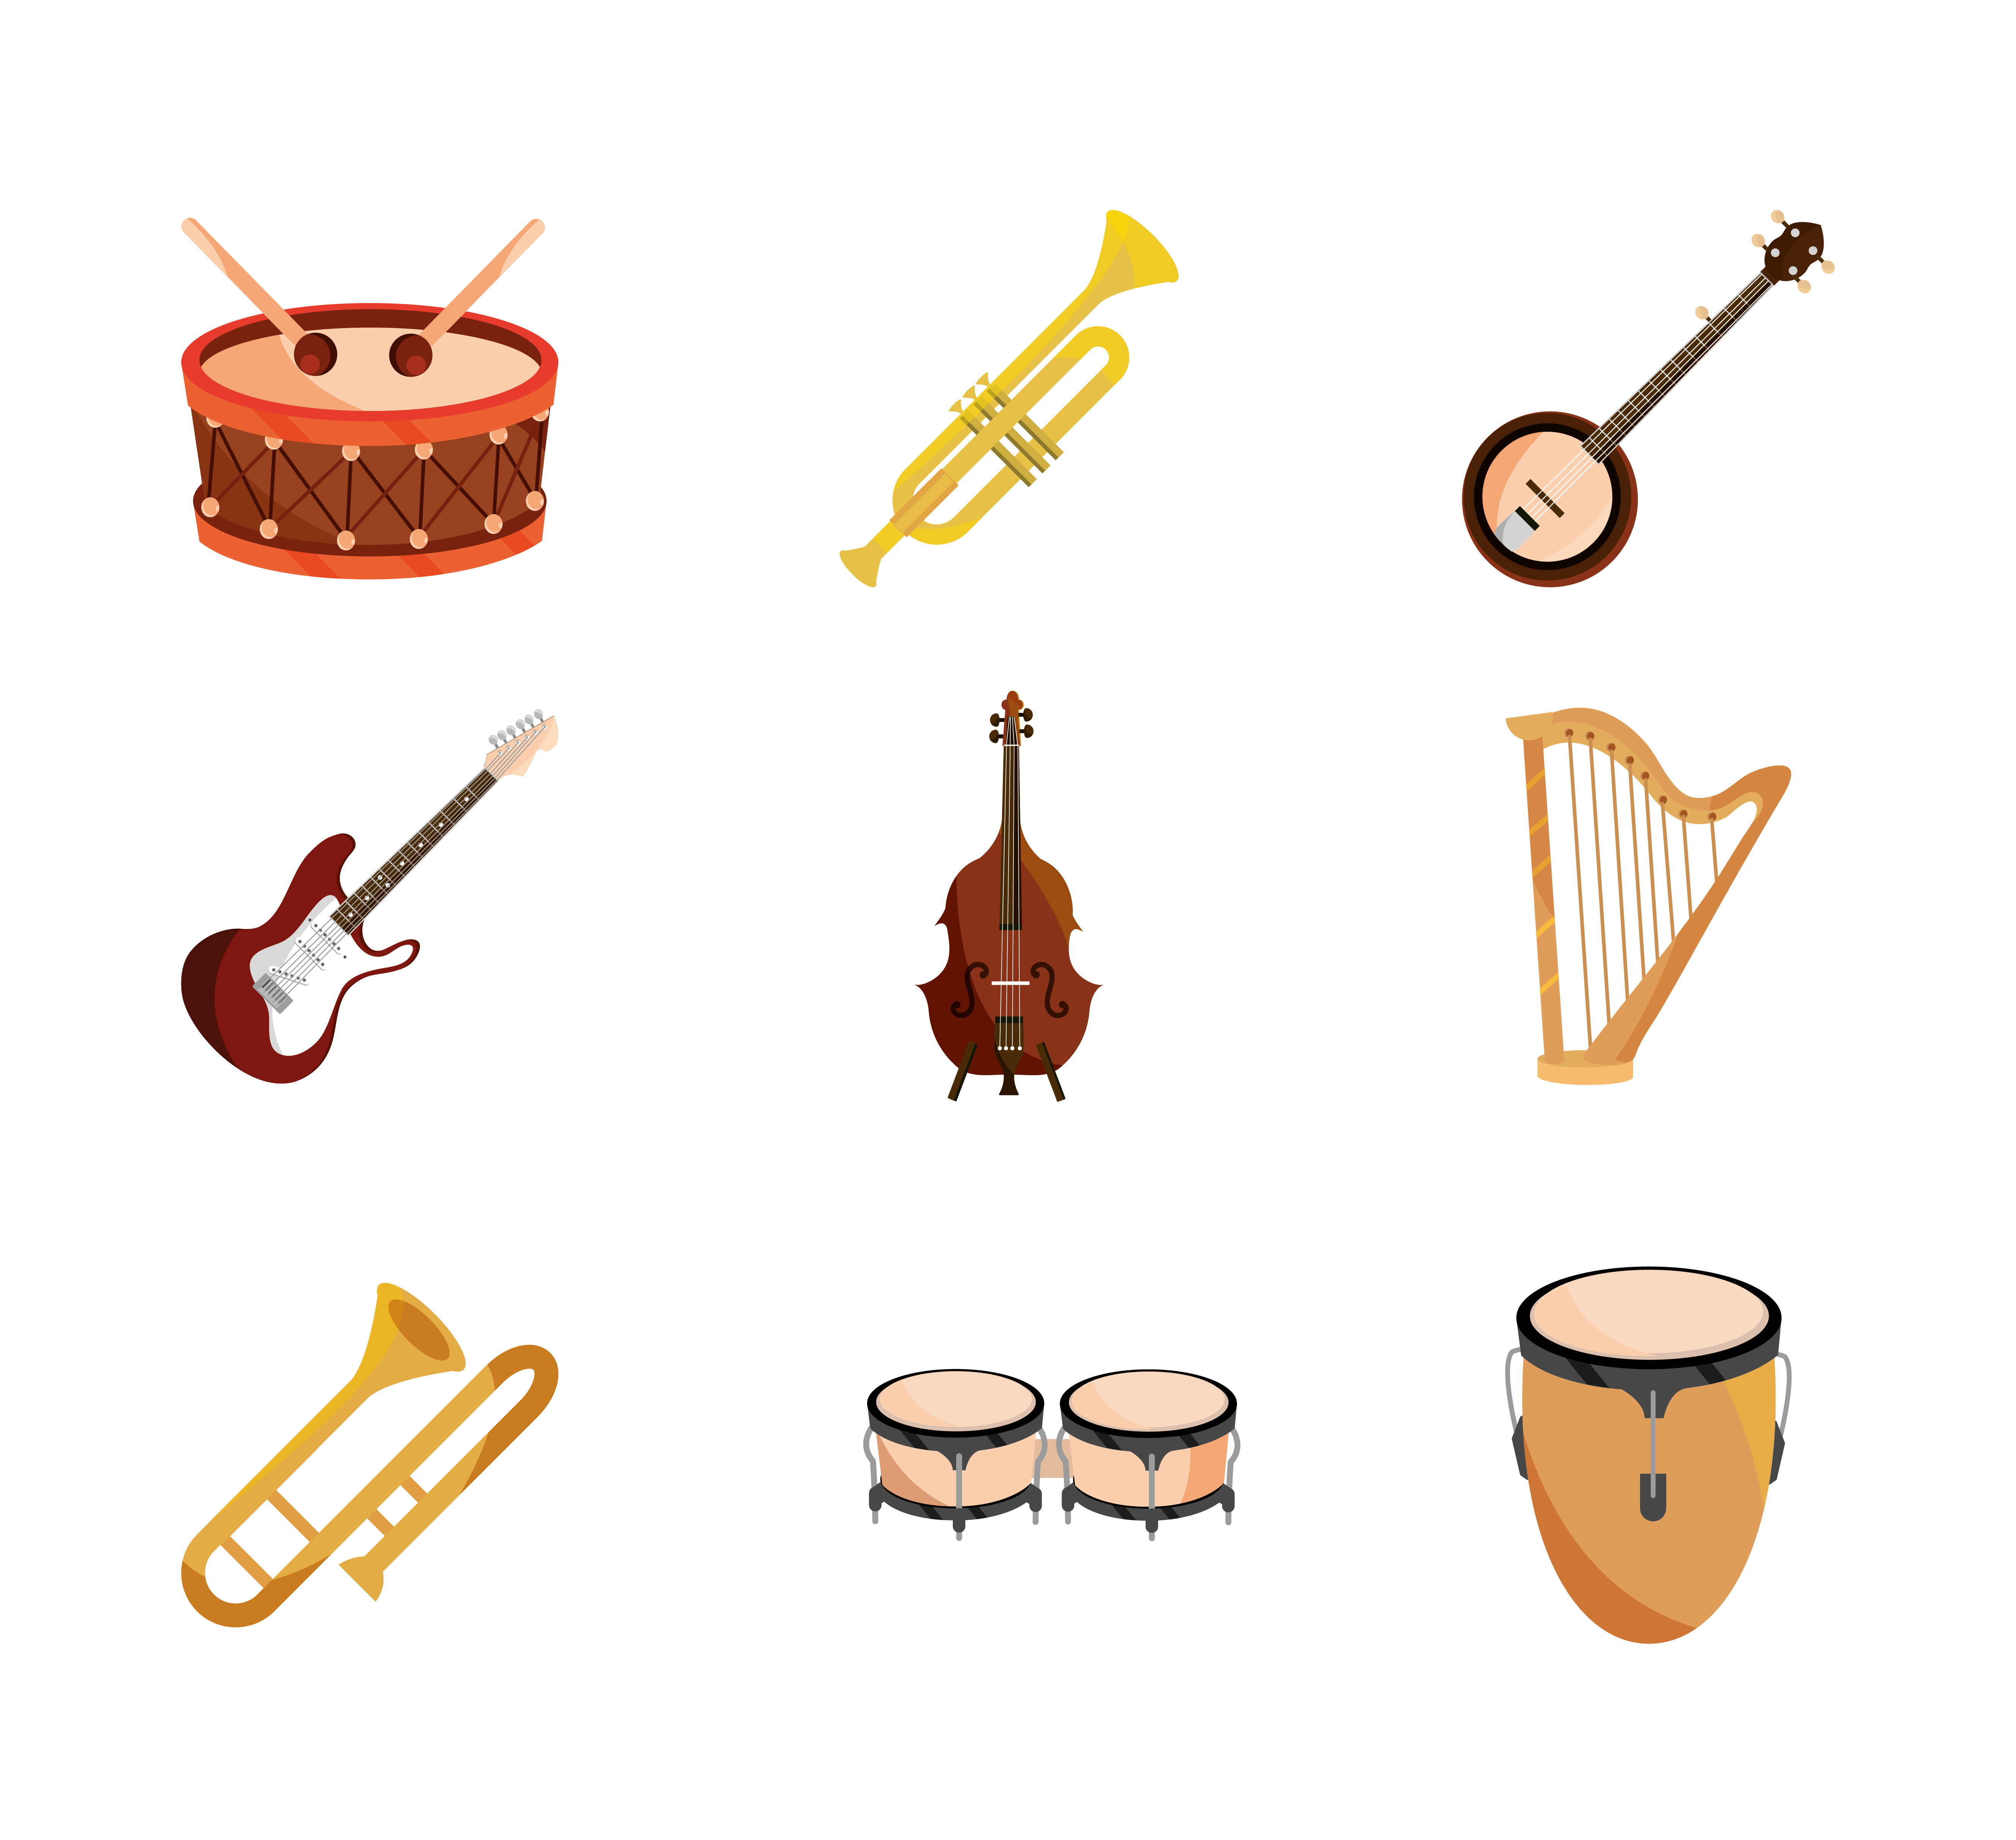 materno pastel aerolíneas instrumentos musicales cuerda viento percusión conjunto de iconos icono  aislado 2554712 Vector en Vecteezy